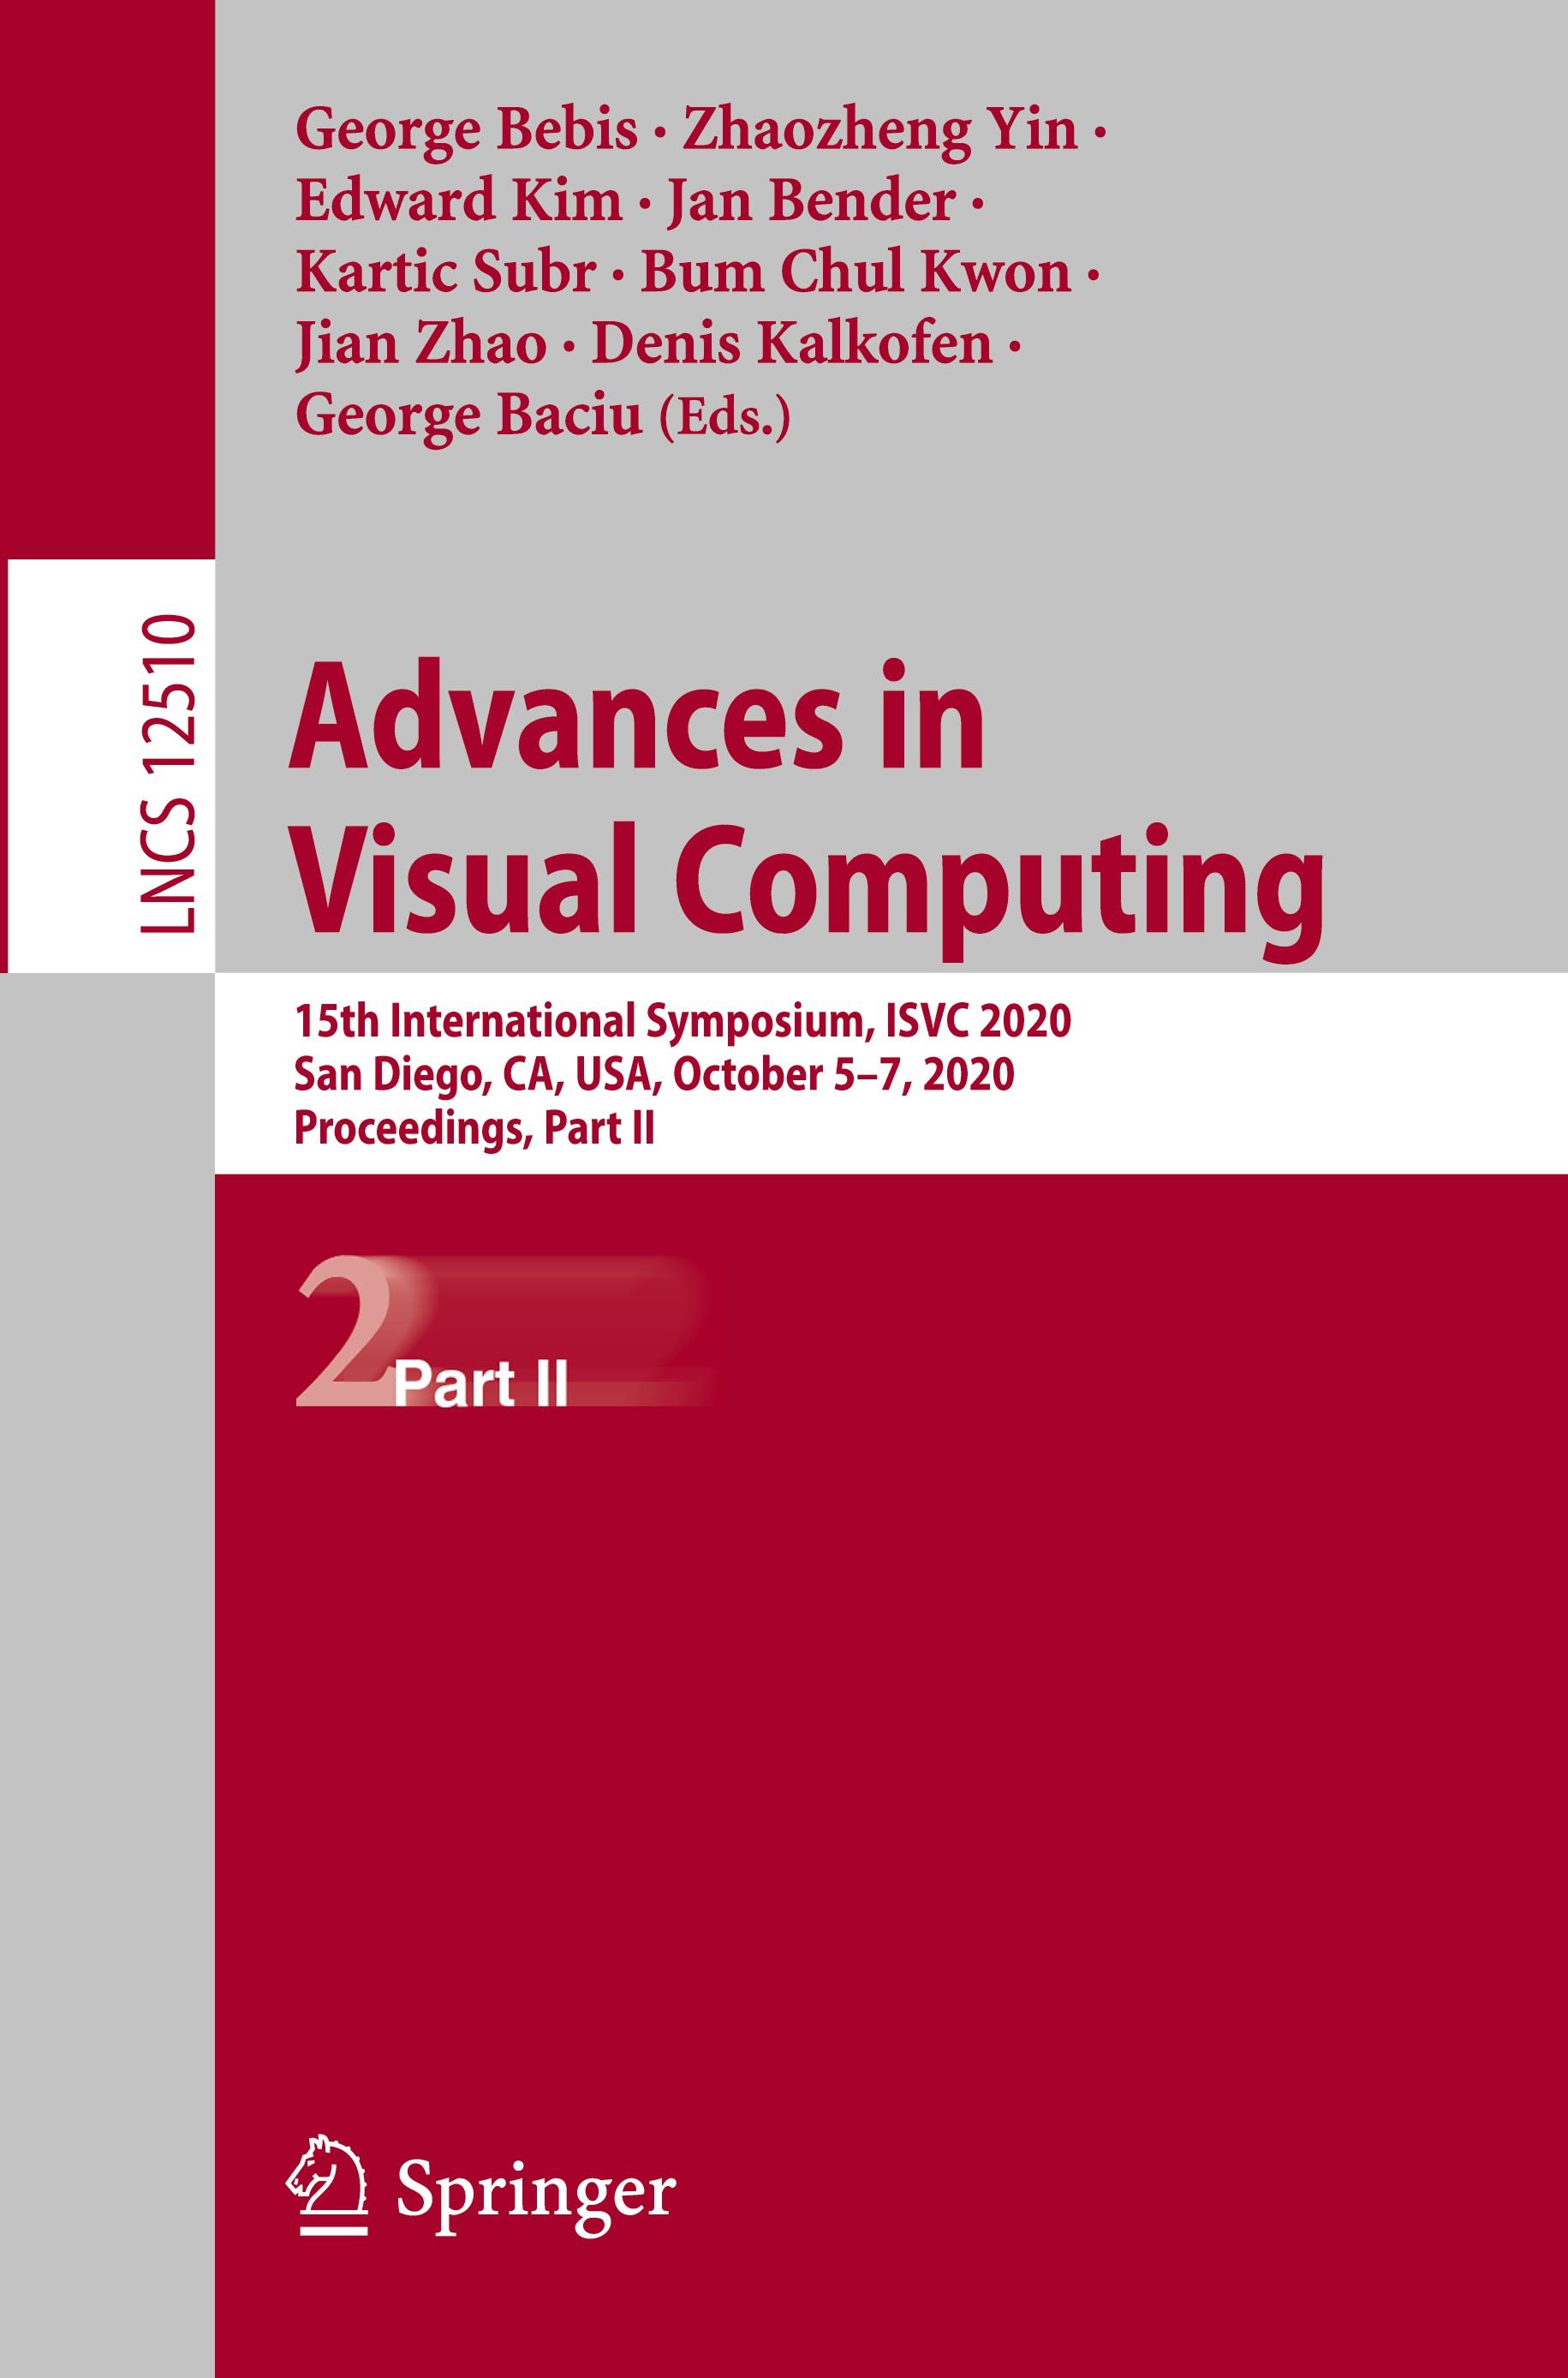 Advances in Visual Computing - Bebis, George|Yin, Zhaozheng|Kim, Edward|Bender, Jan|Subr, Kartic|Kwon, Bum Chul|Zhao, Jian|Kalkofen, Denis|Baciu, George